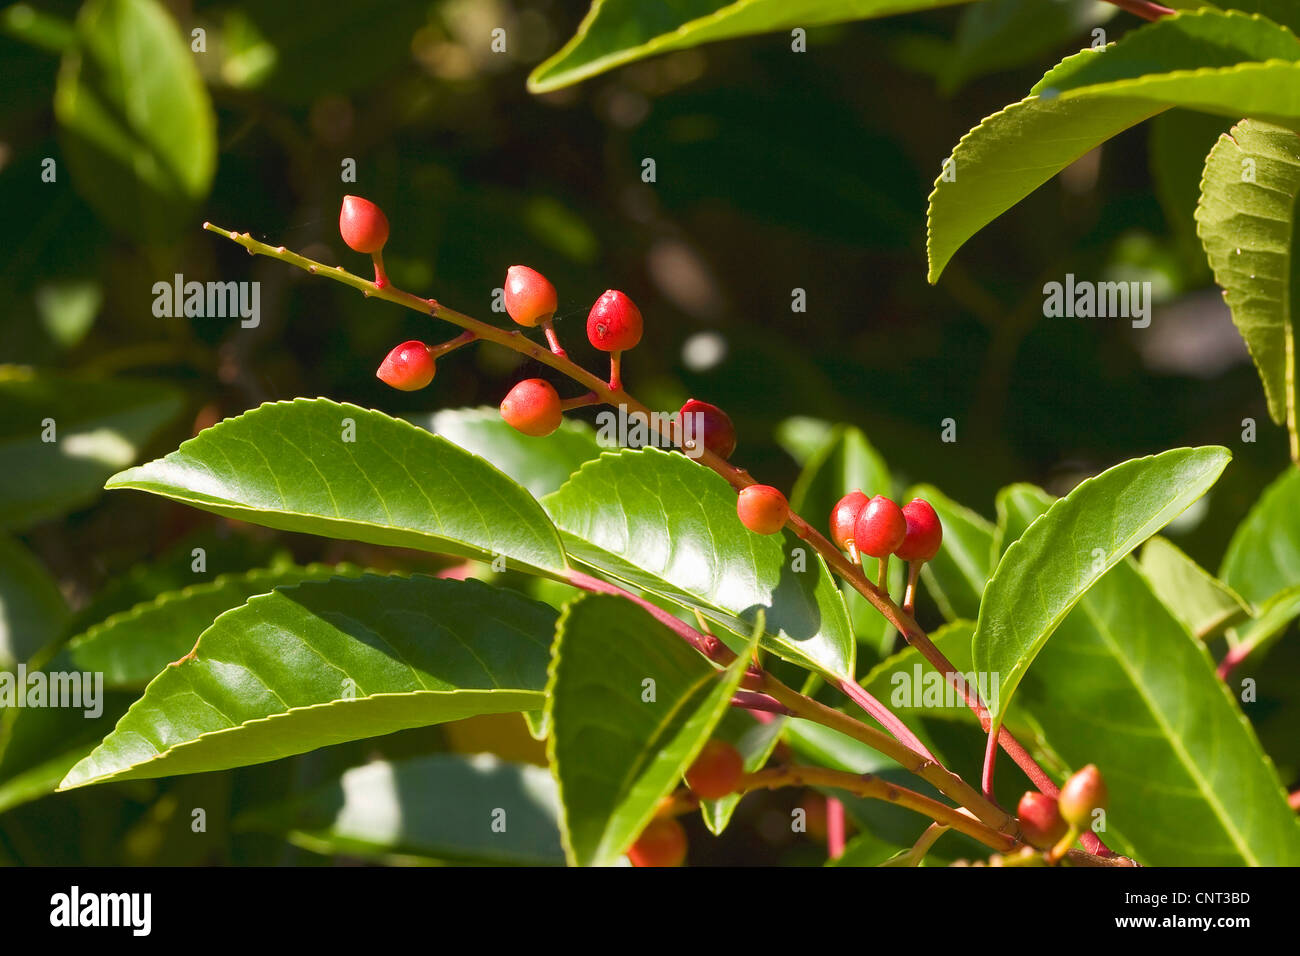 Portugal laurel (Prunus lusitanica), fruits Stock Photo